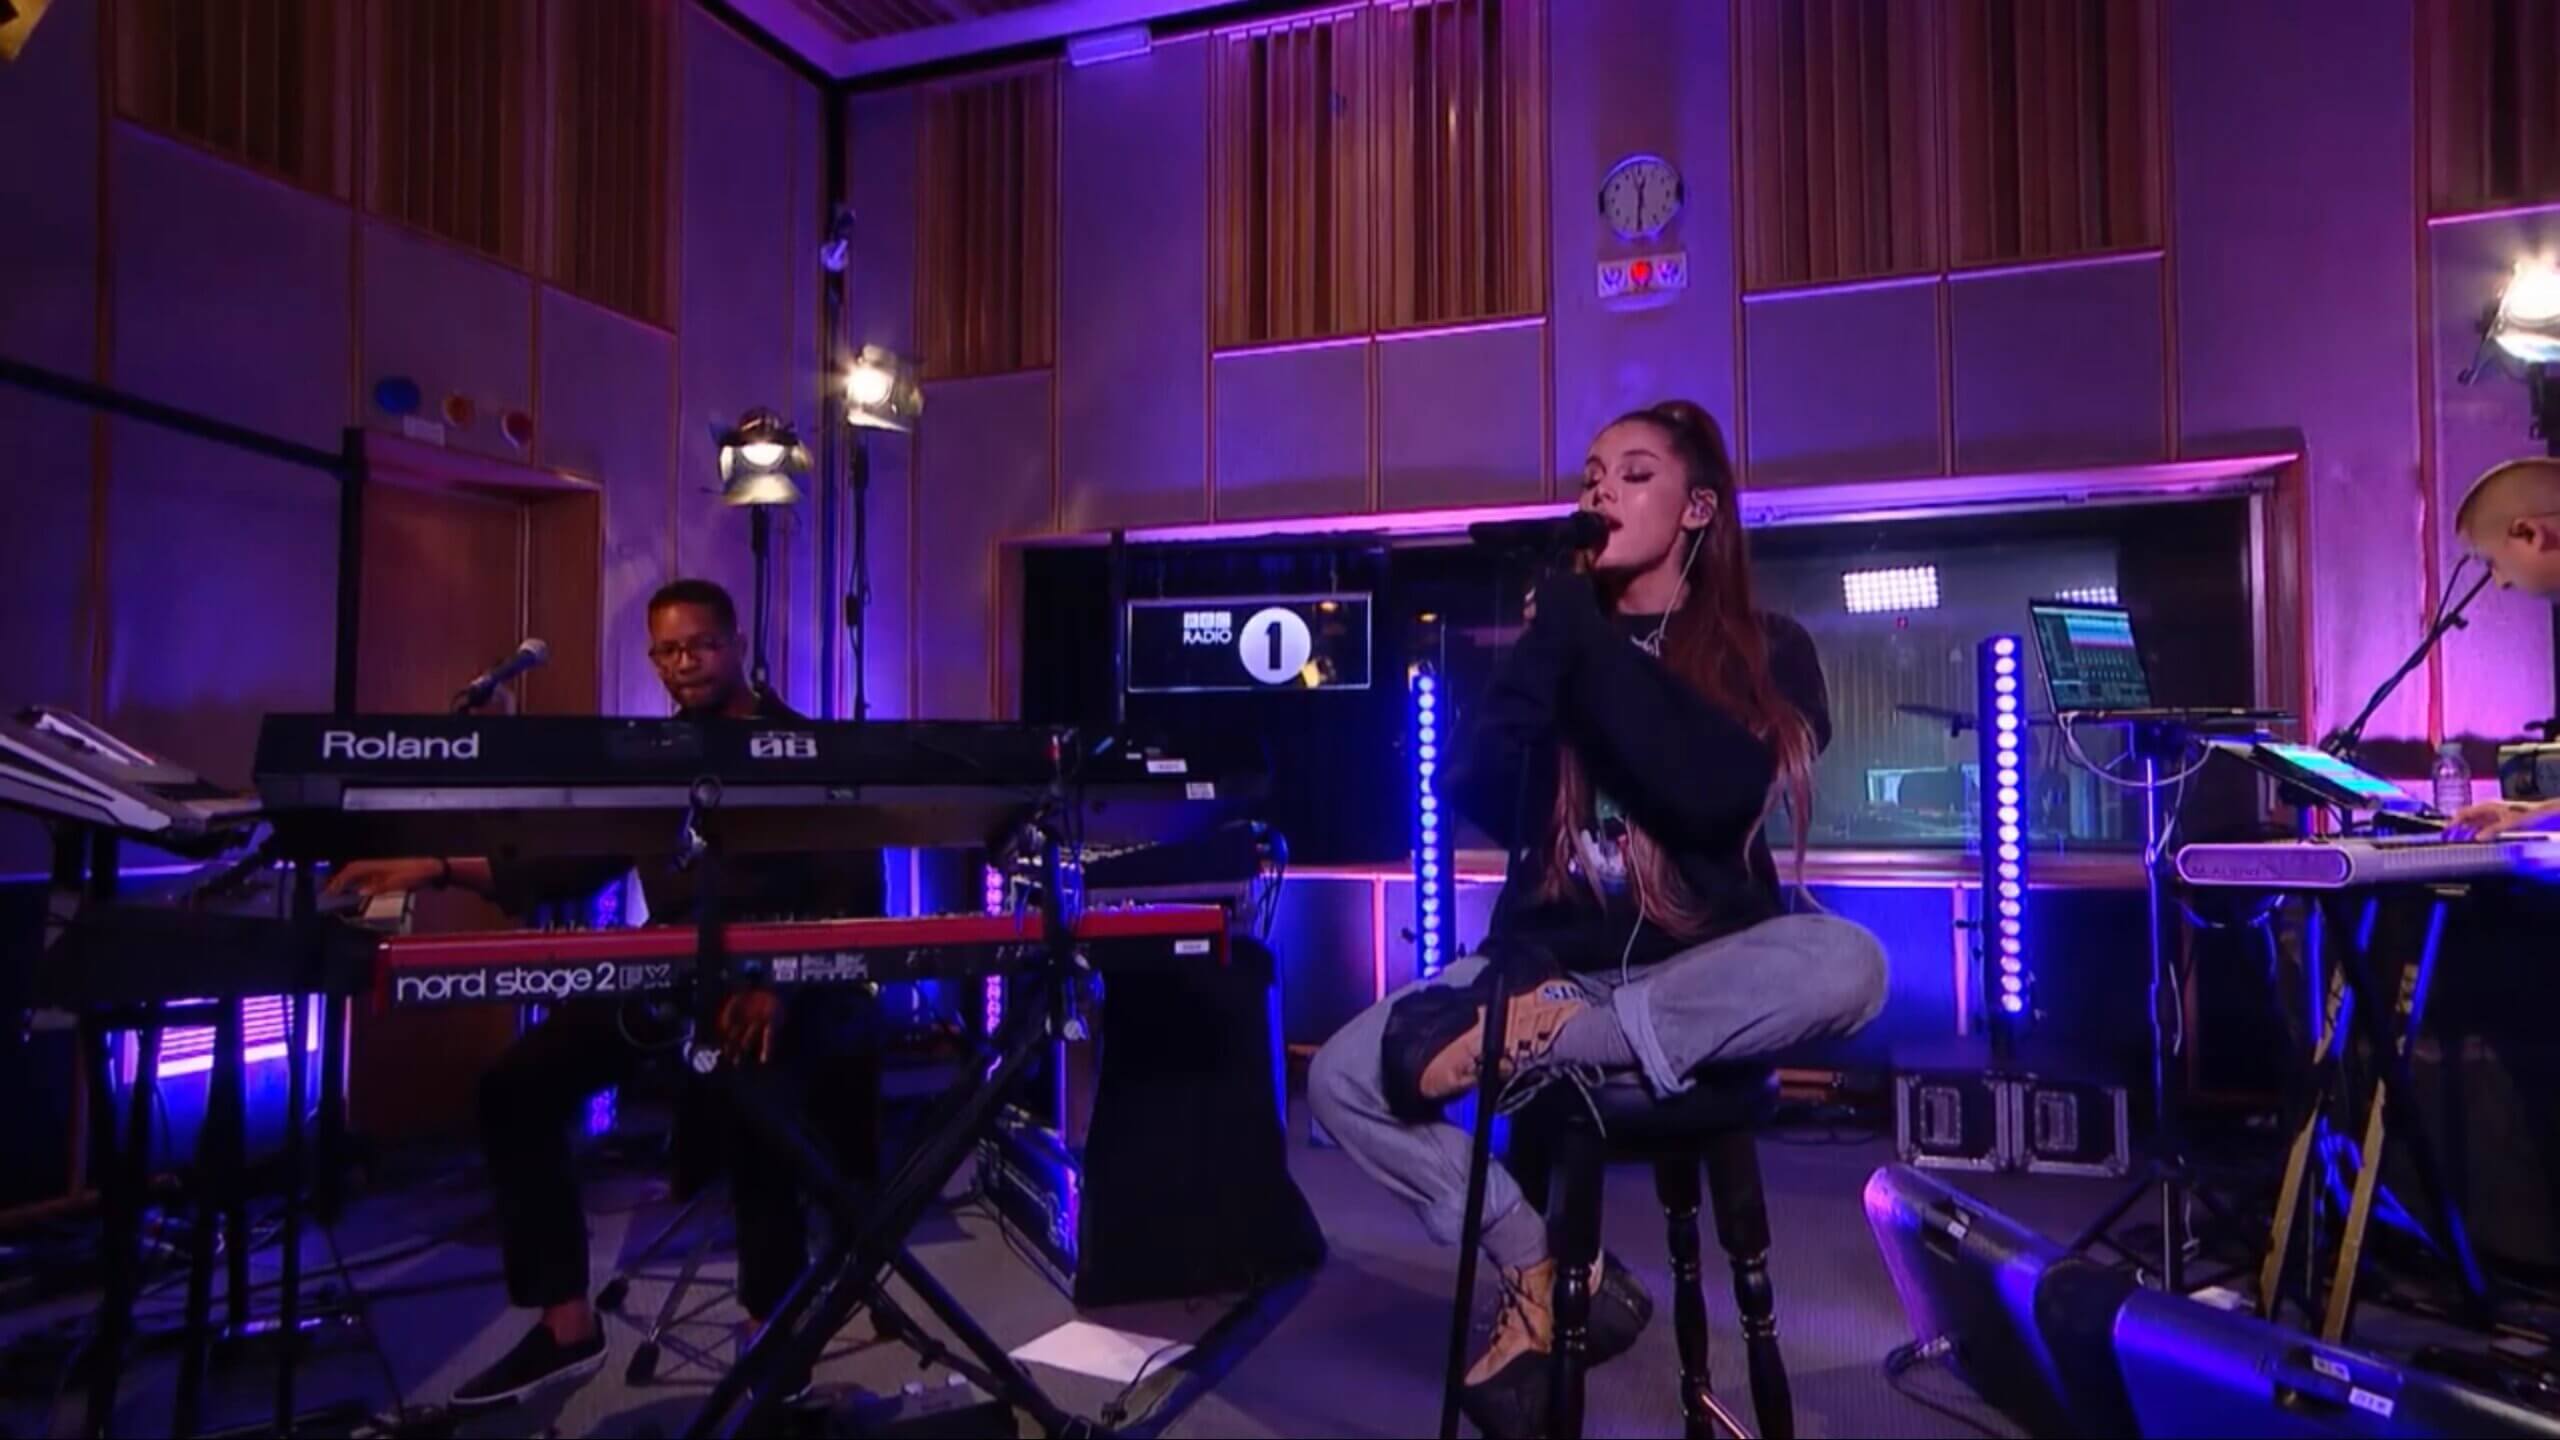 Ariana Grande - R.E.M. - In the Live Lounge 3